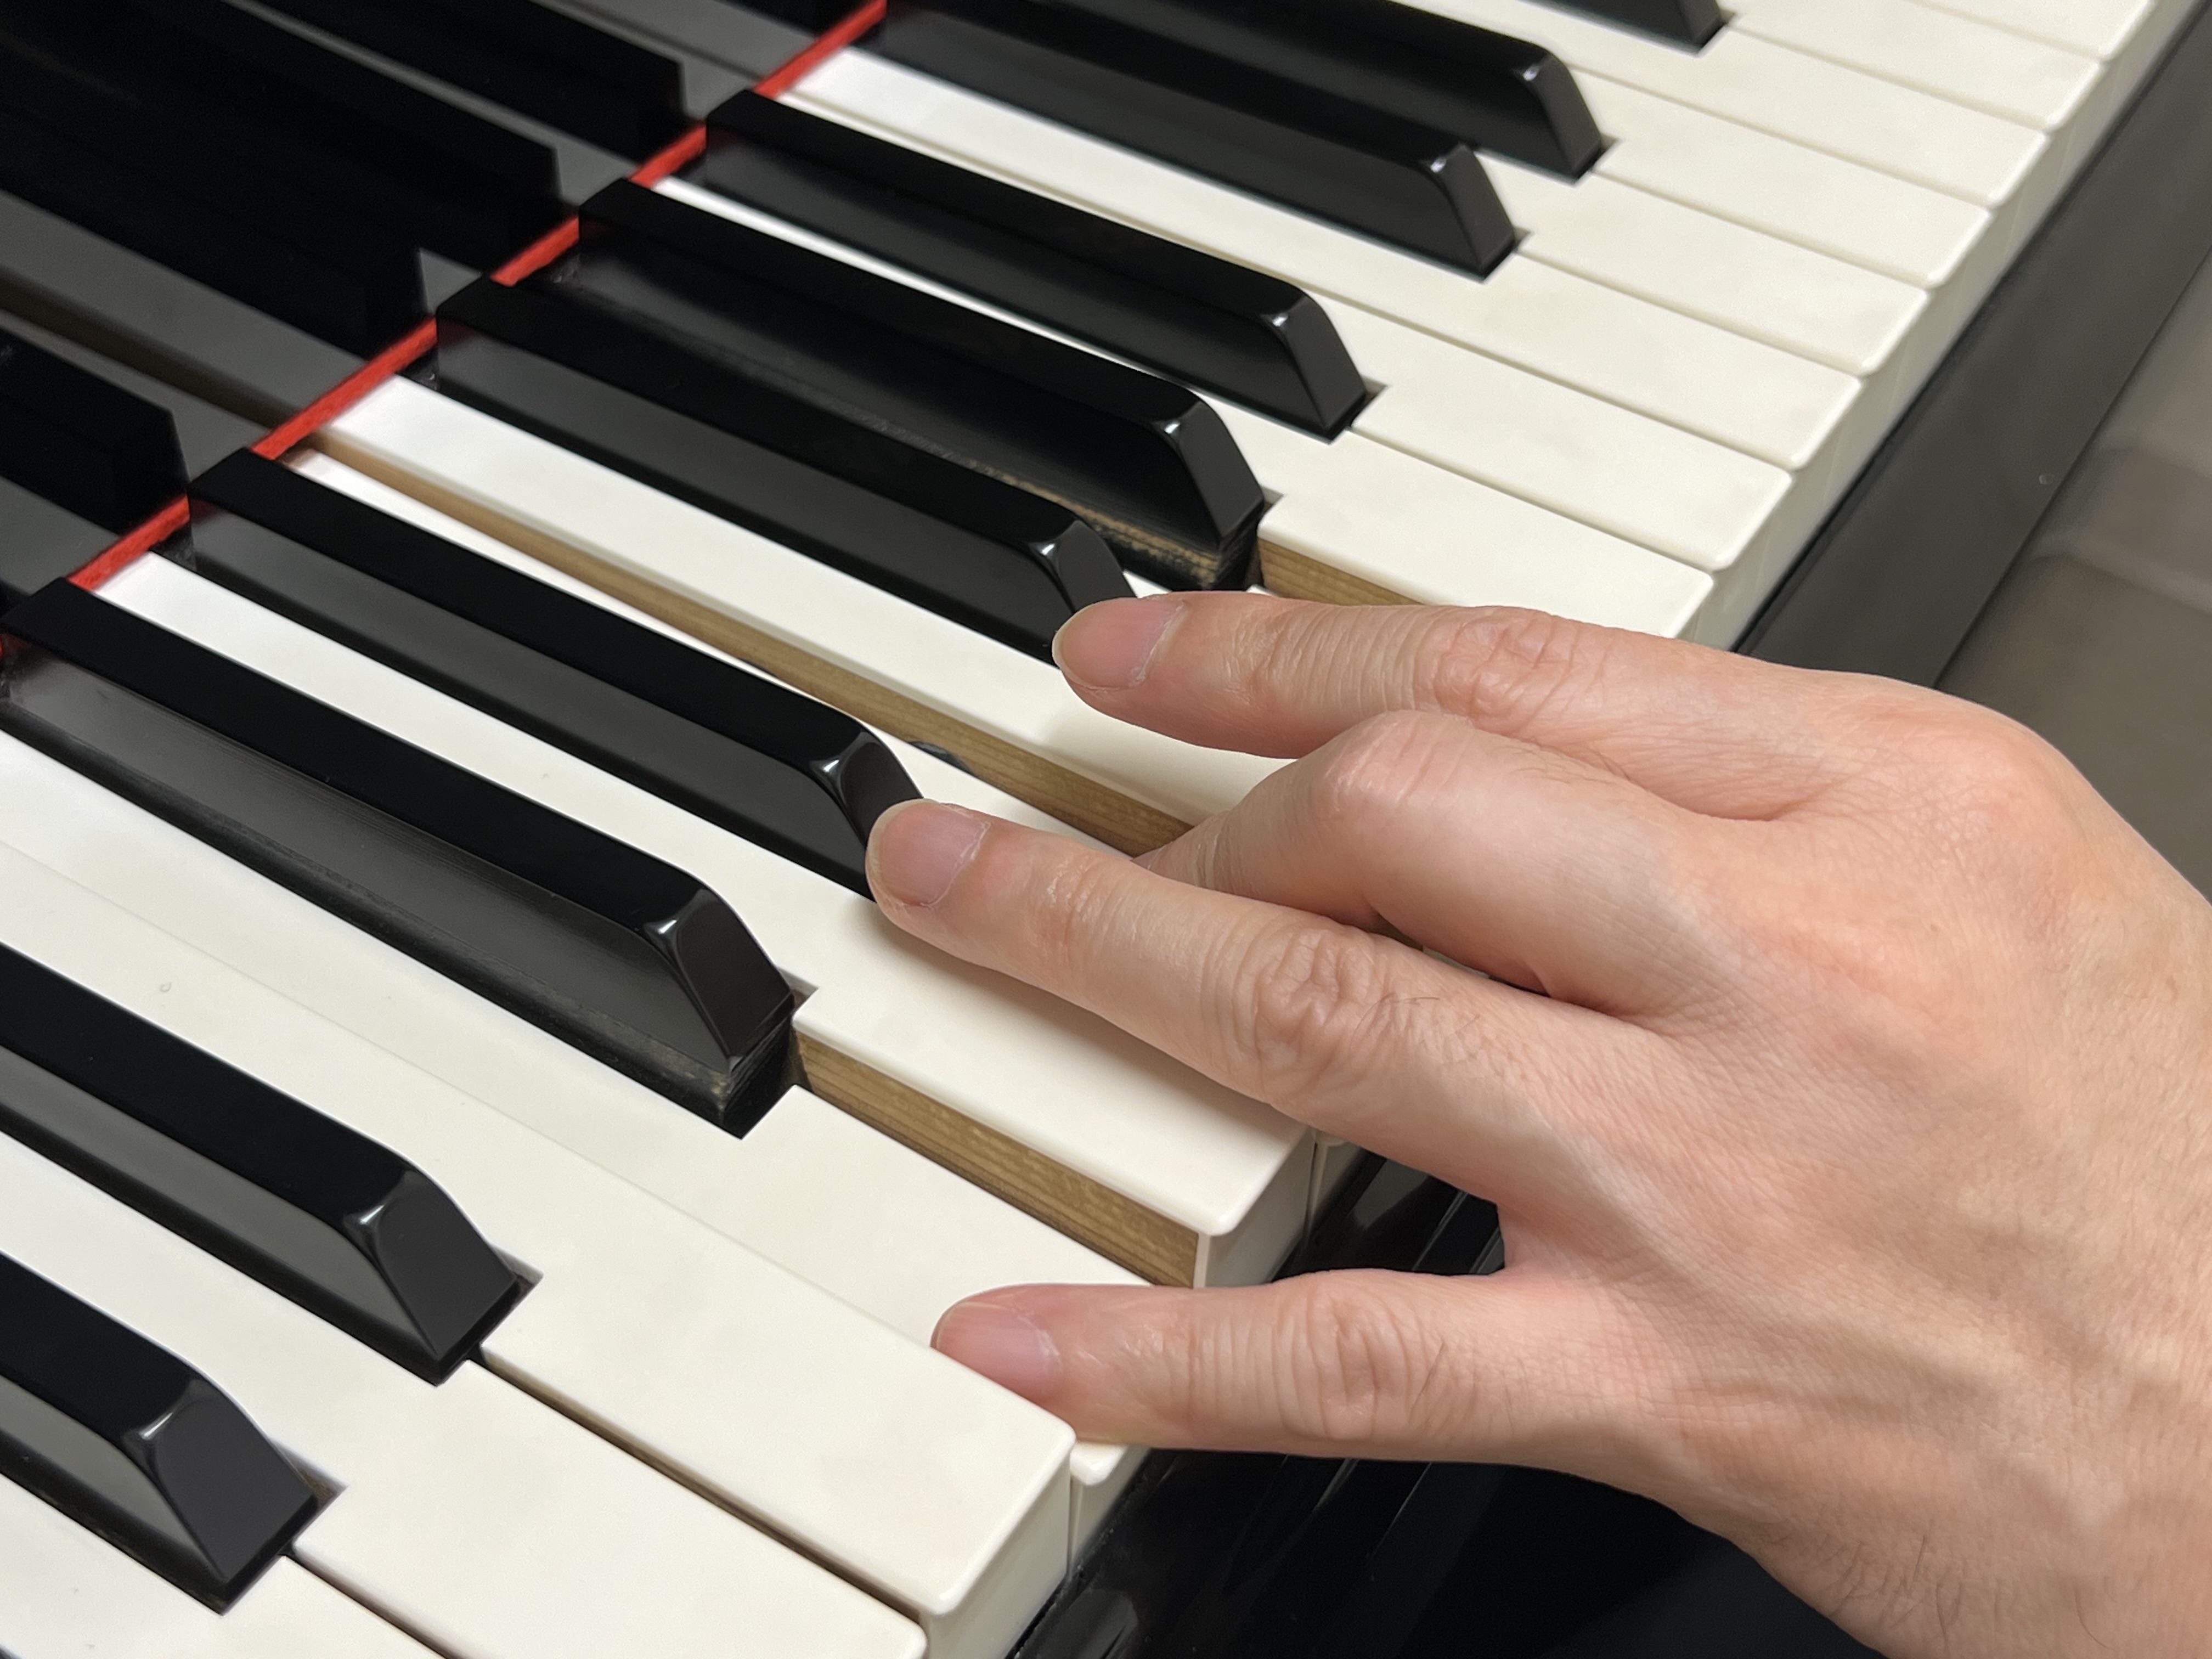 CONTENTS鍵盤楽器の弾き方キーボード教室のご案内鍵盤楽器の弾き方 初めての方へ はじめに、両手それぞれ5本の指がどういう状態で鍵盤に触れるかを画像でご覧ください。 鍵盤を押した（弾いた）時 弾く時の姿勢、身体の角度 標準的な姿勢 あまり好ましくない姿勢 左手は伴奏右手はメロディー旋律、その前に […]